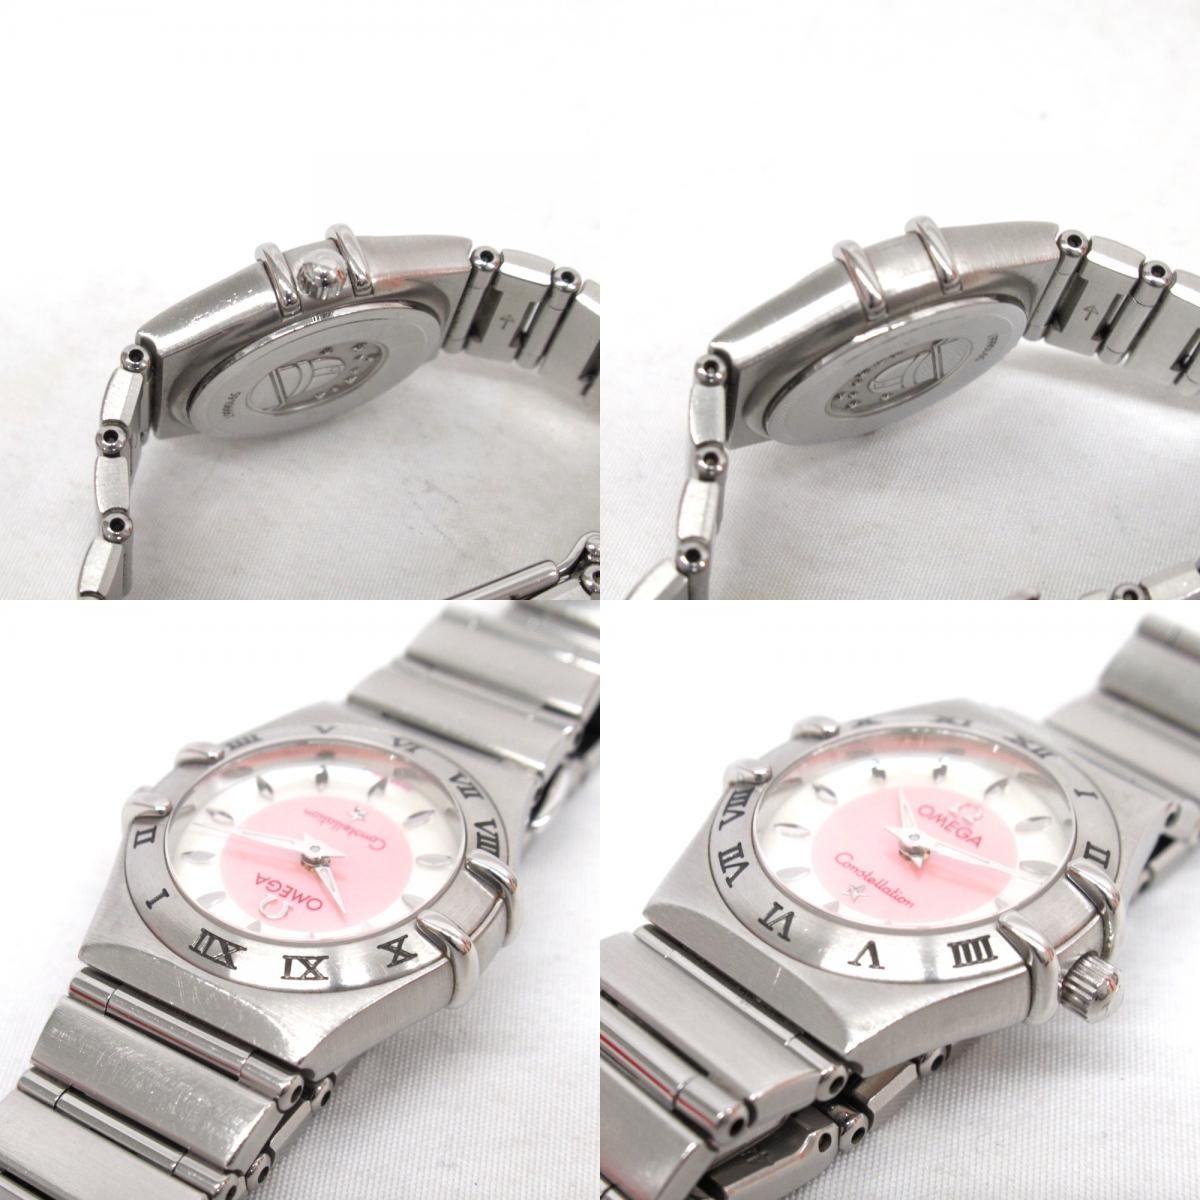 オメガ 腕時計 クォーツ ローマンベゼル コンステレーション 1562.83.00 シェル ホワイト ピンク系 KR221231